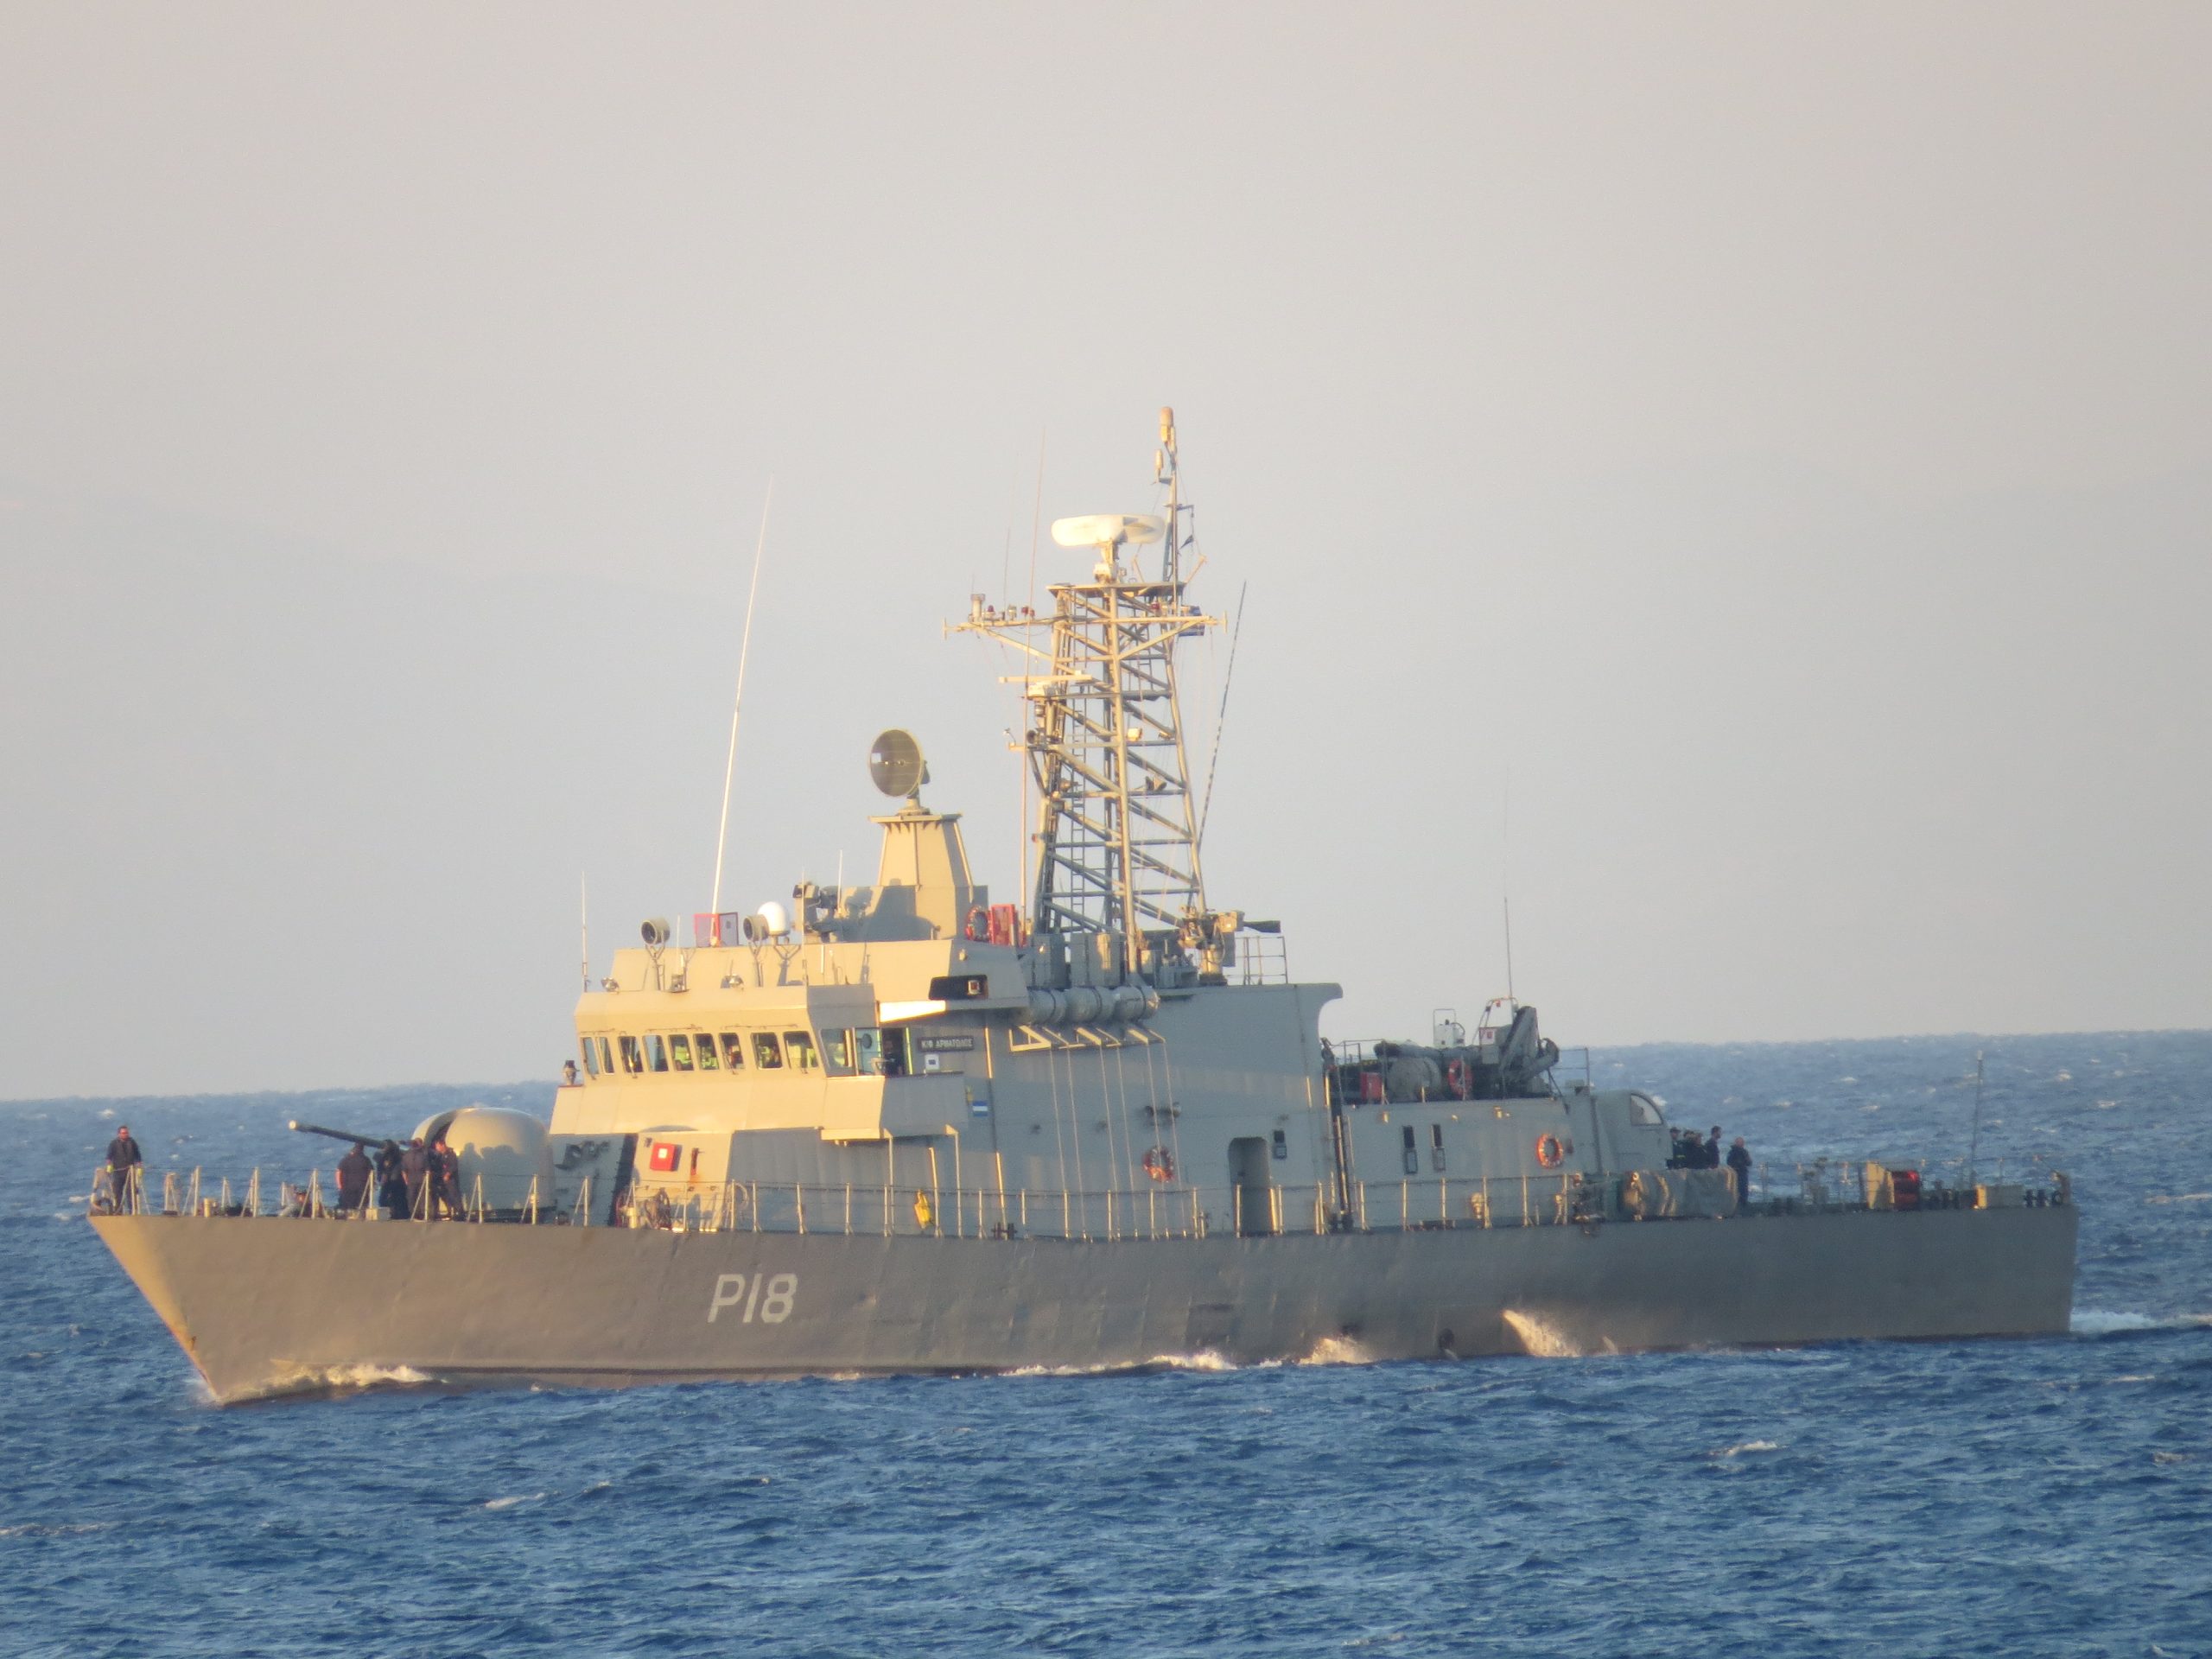 Πλοιοκτήτρια εταιρεία τουρκικού σκάφους: «Ήταν ατύχημα»